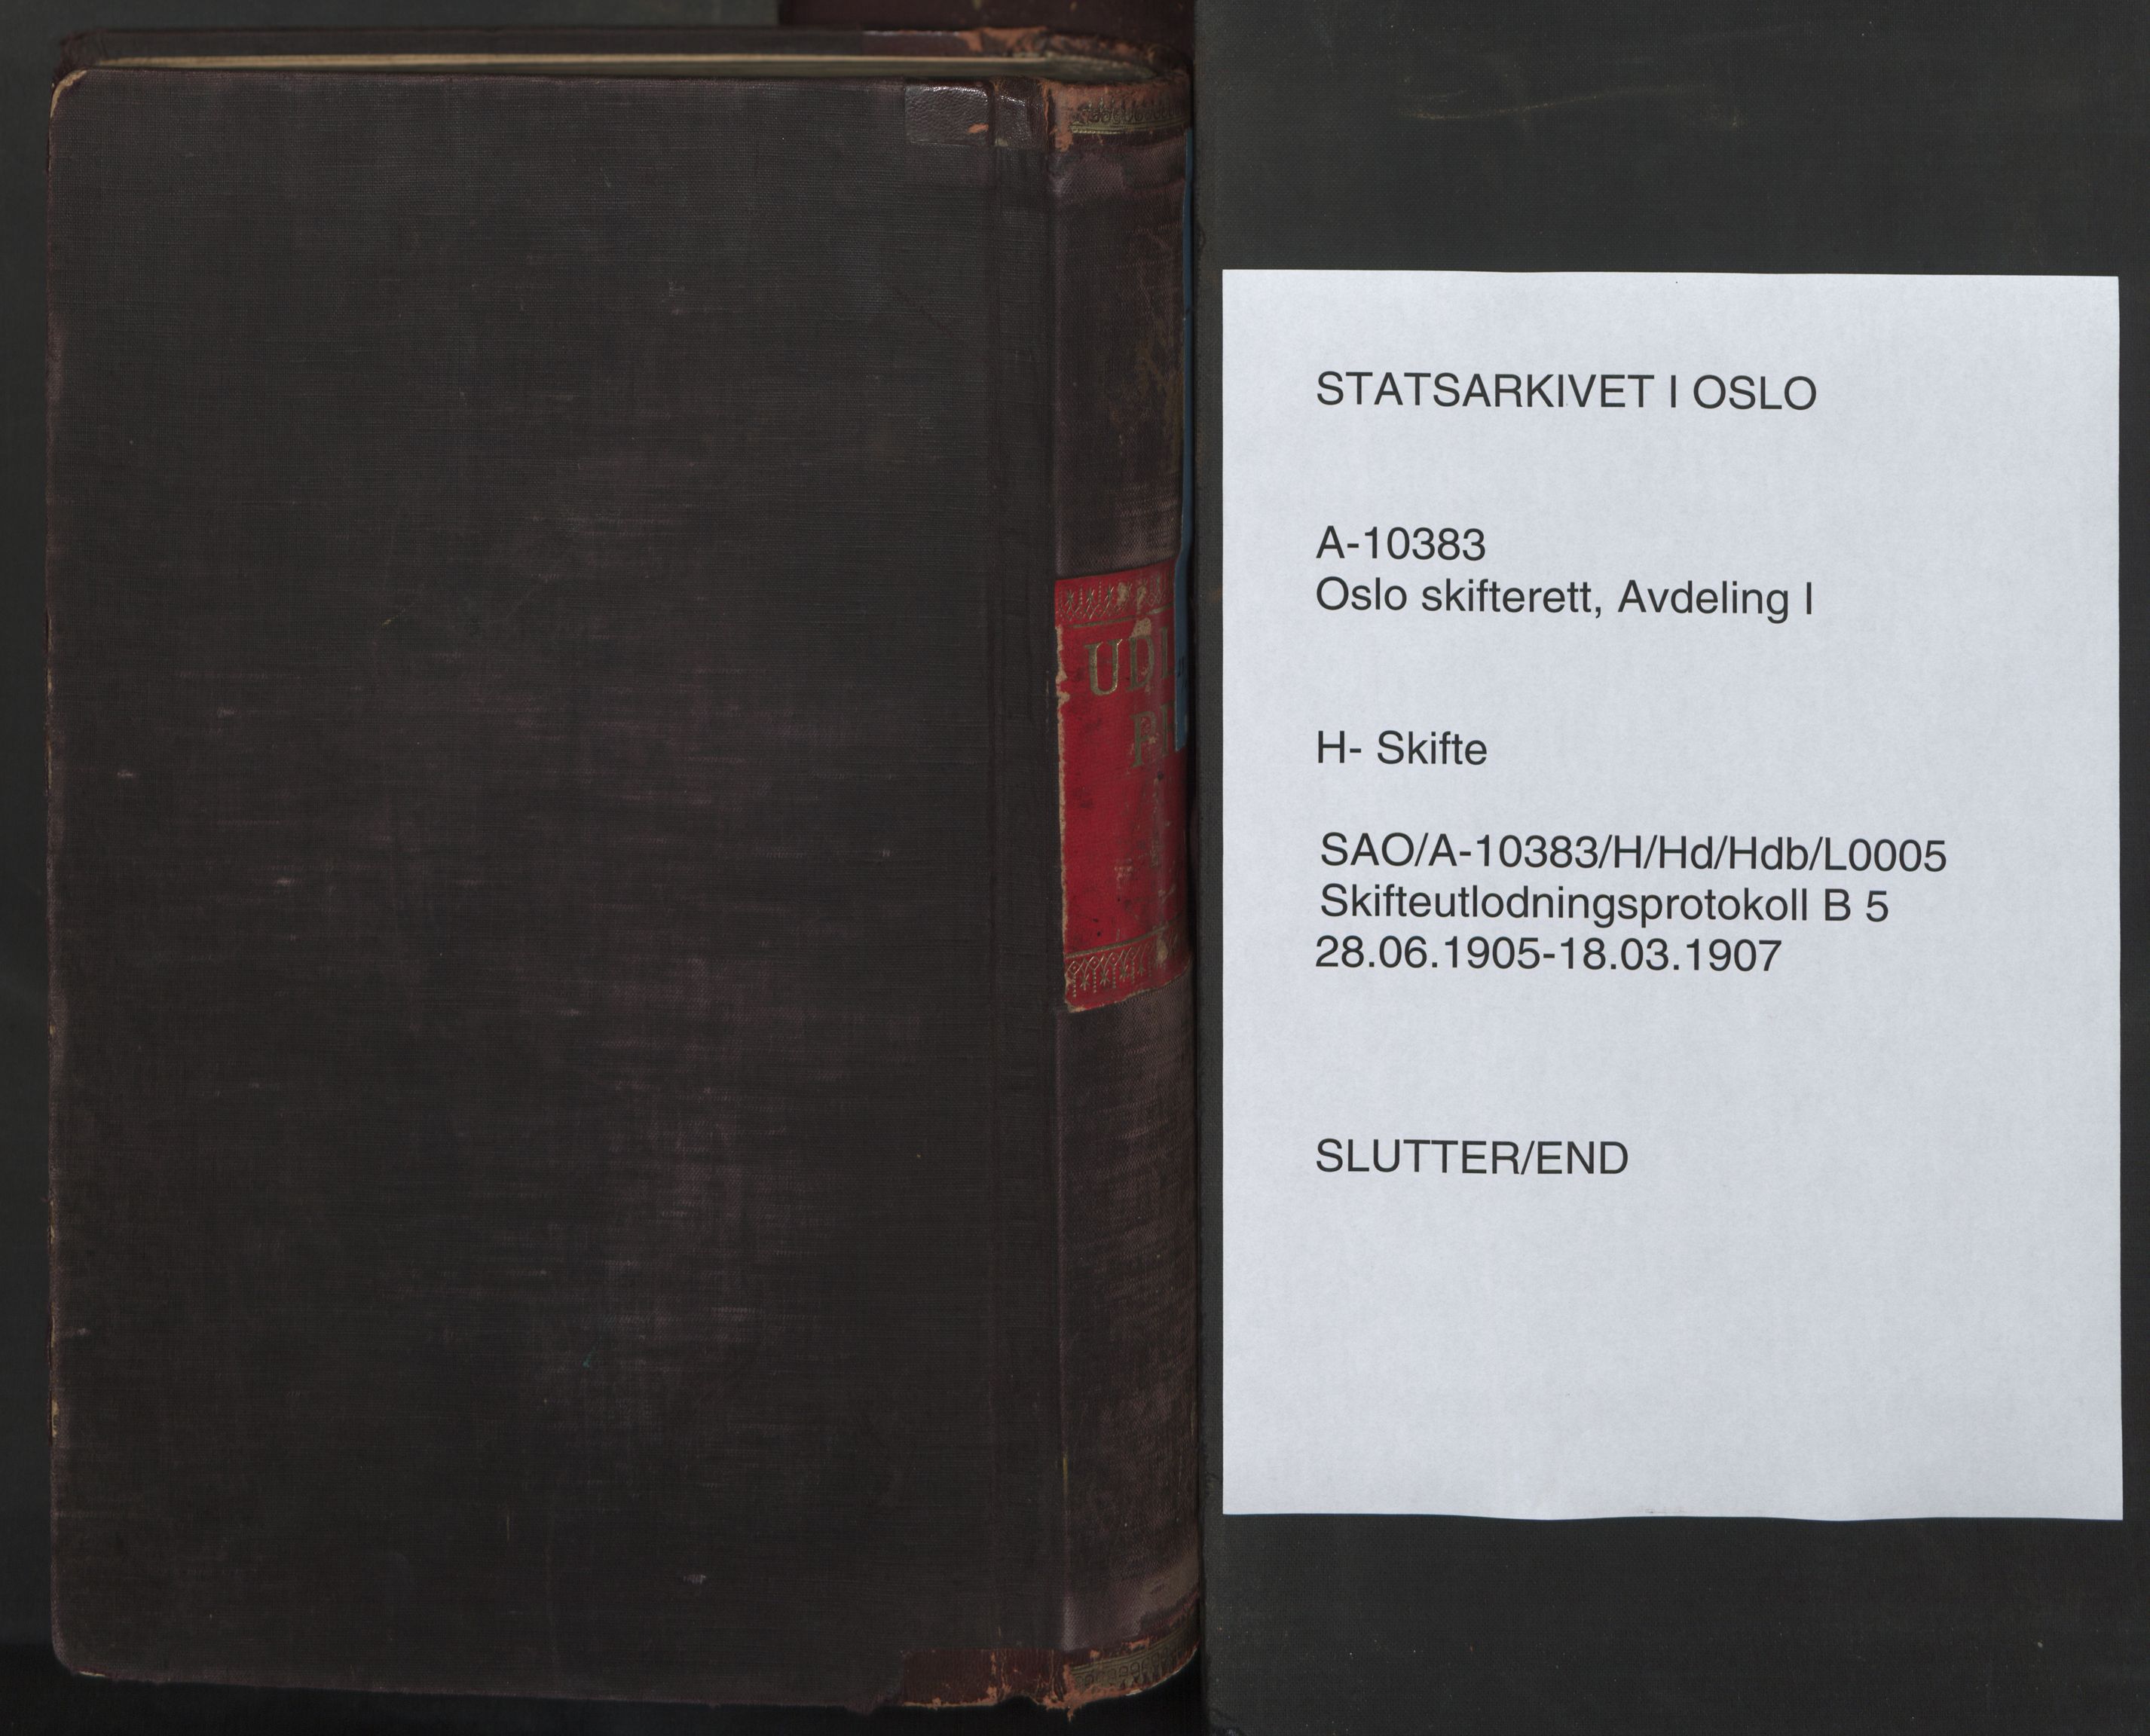 Oslo skifterett, SAO/A-10383/H/Hd/Hdb/L0005: Skifteutlodningsprotokoll, 1905-1907